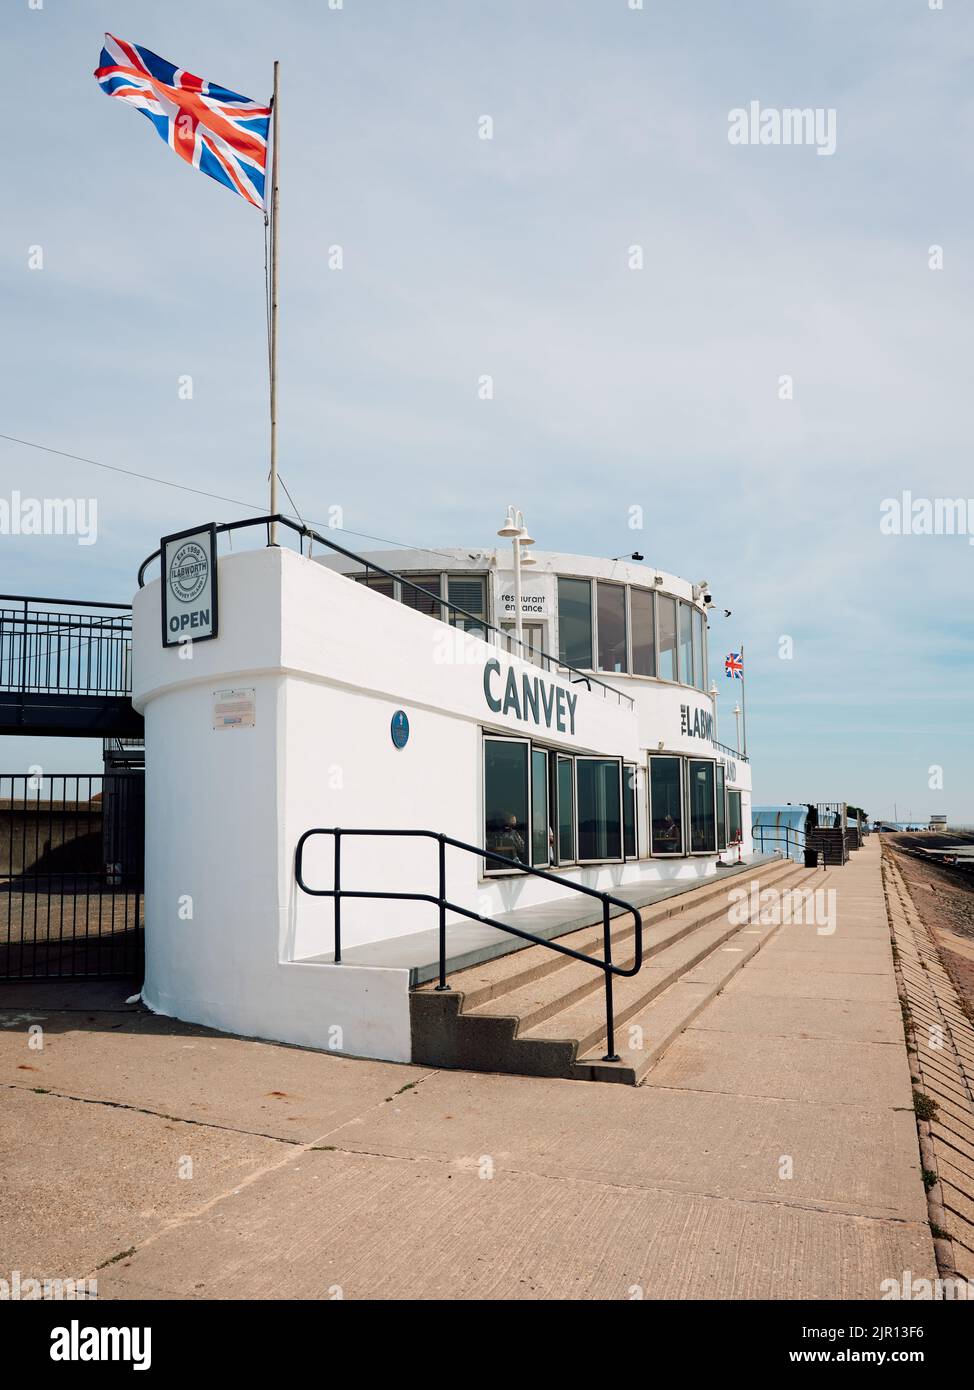 Die modernistische Betonarchitektur des Labworth Cafe befindet sich an der Küste von Canvey Island, Thames Estuary, Essex, England, Großbritannien Stockfoto